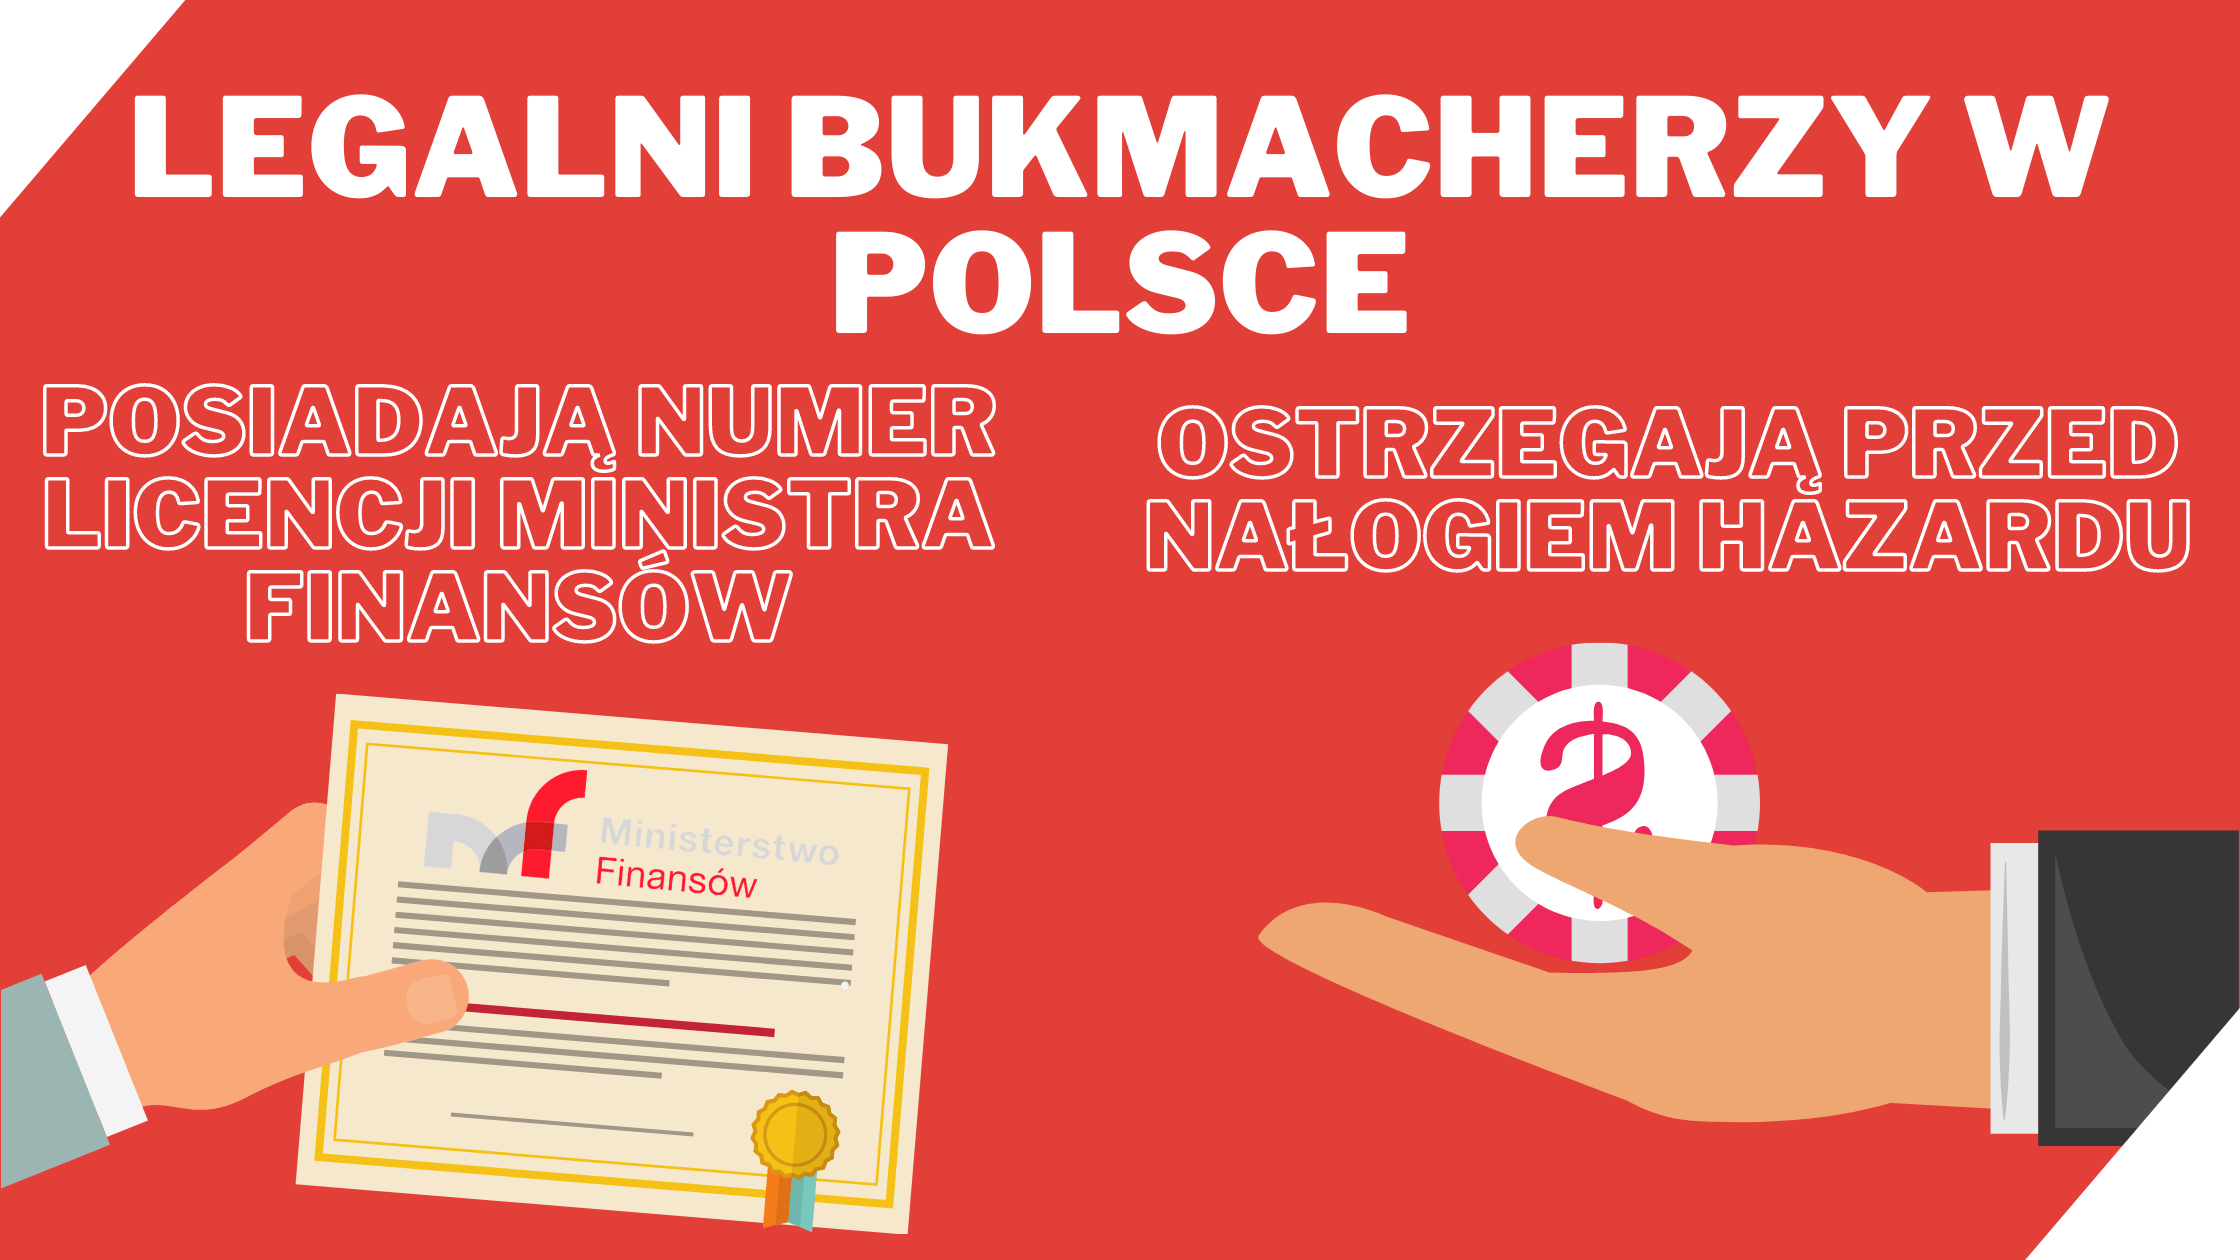 Legalni bukmacherzy w Polsce - Licencja Ministerstwa Finansów i nalóg hazardowy